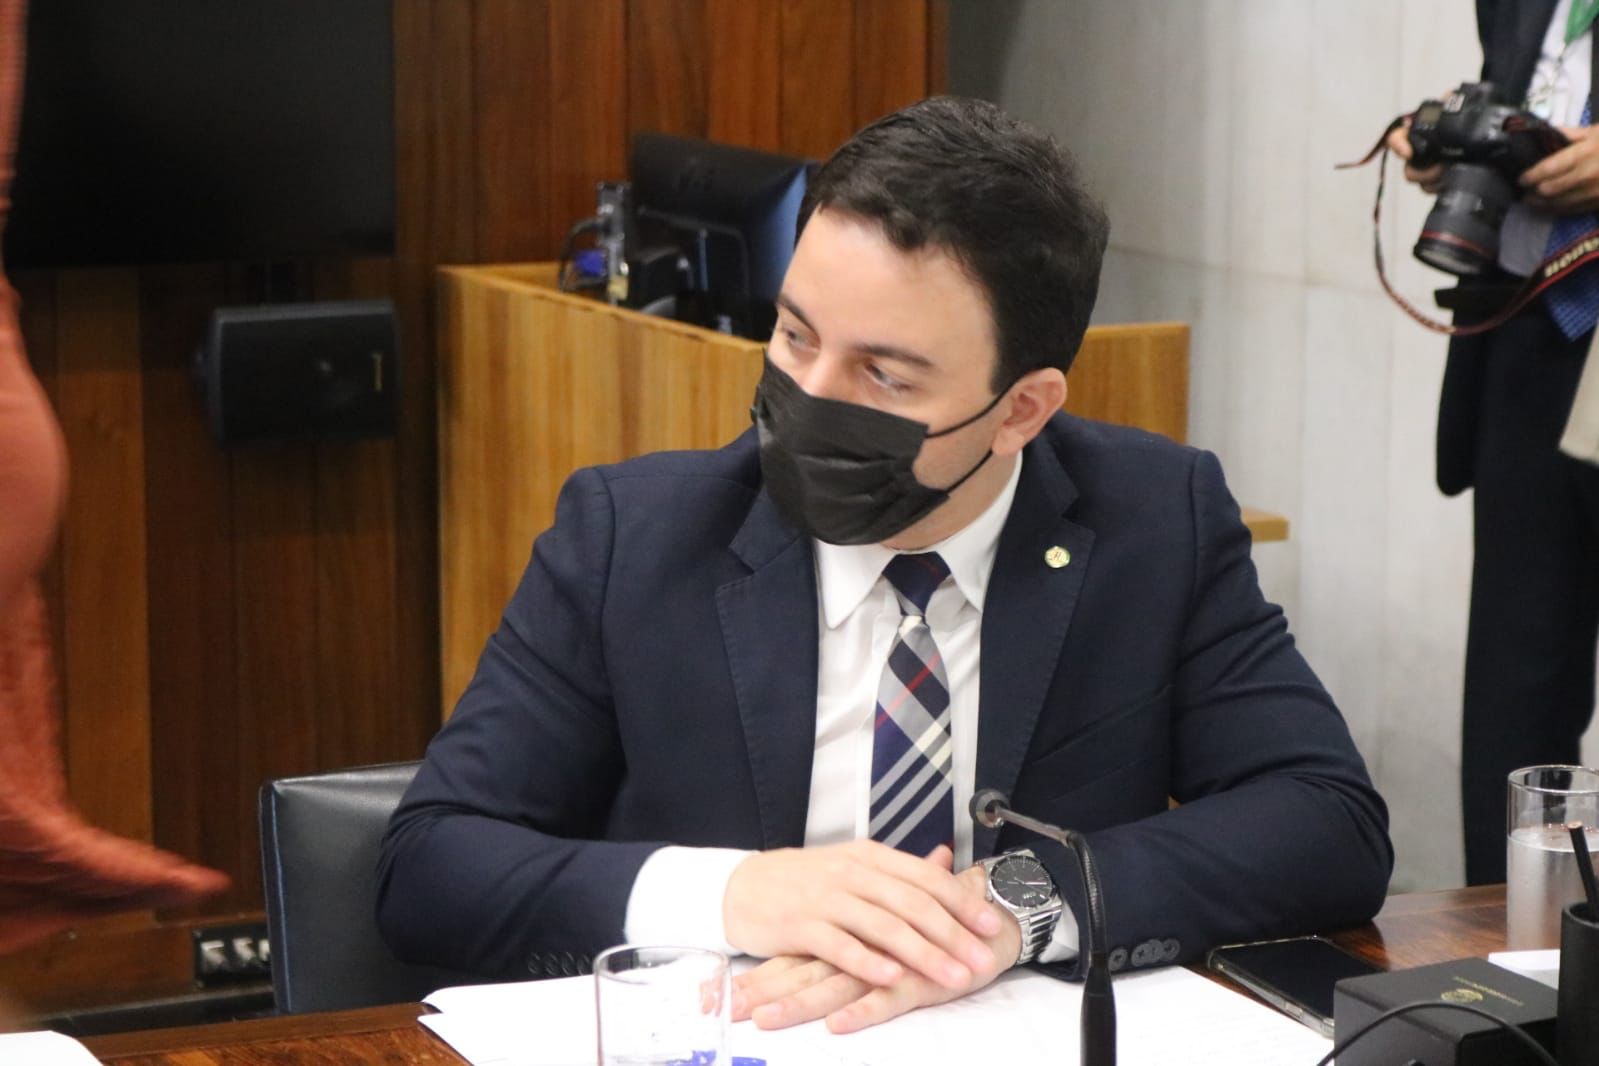 Presidente da frente parlamentar da enfermagem, Célio comemora aprovação de piso salarial